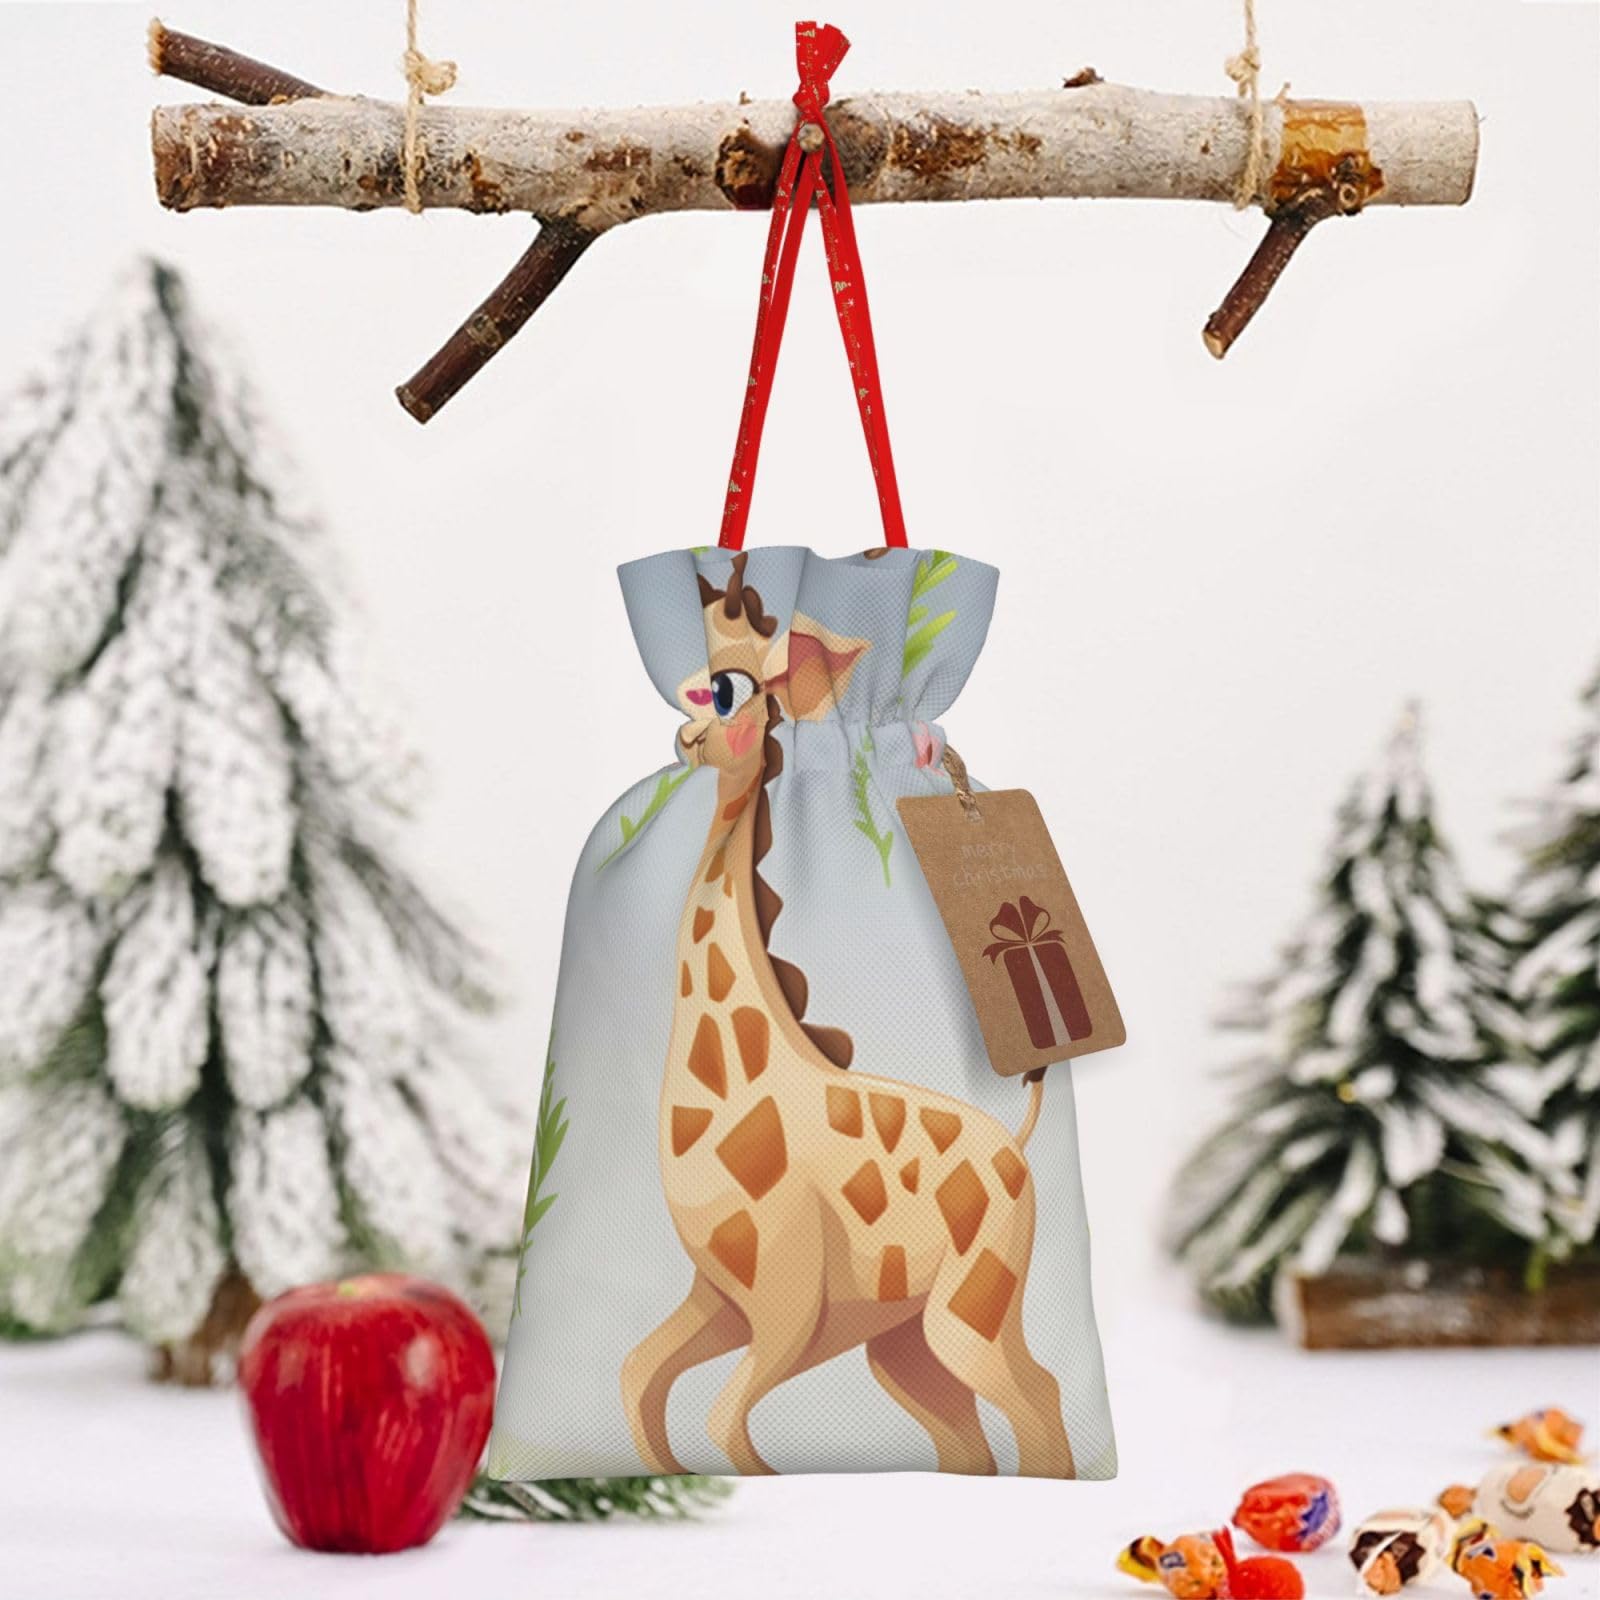 RLDOBOFE Cute giraffe print Christmas Gift Bag Christmas Drawstring Bag Reusable Gift Wrapping Goody Gift Bags with Gift Tag Present Storage Bag for Christmas Thanksgiving Wedding Party